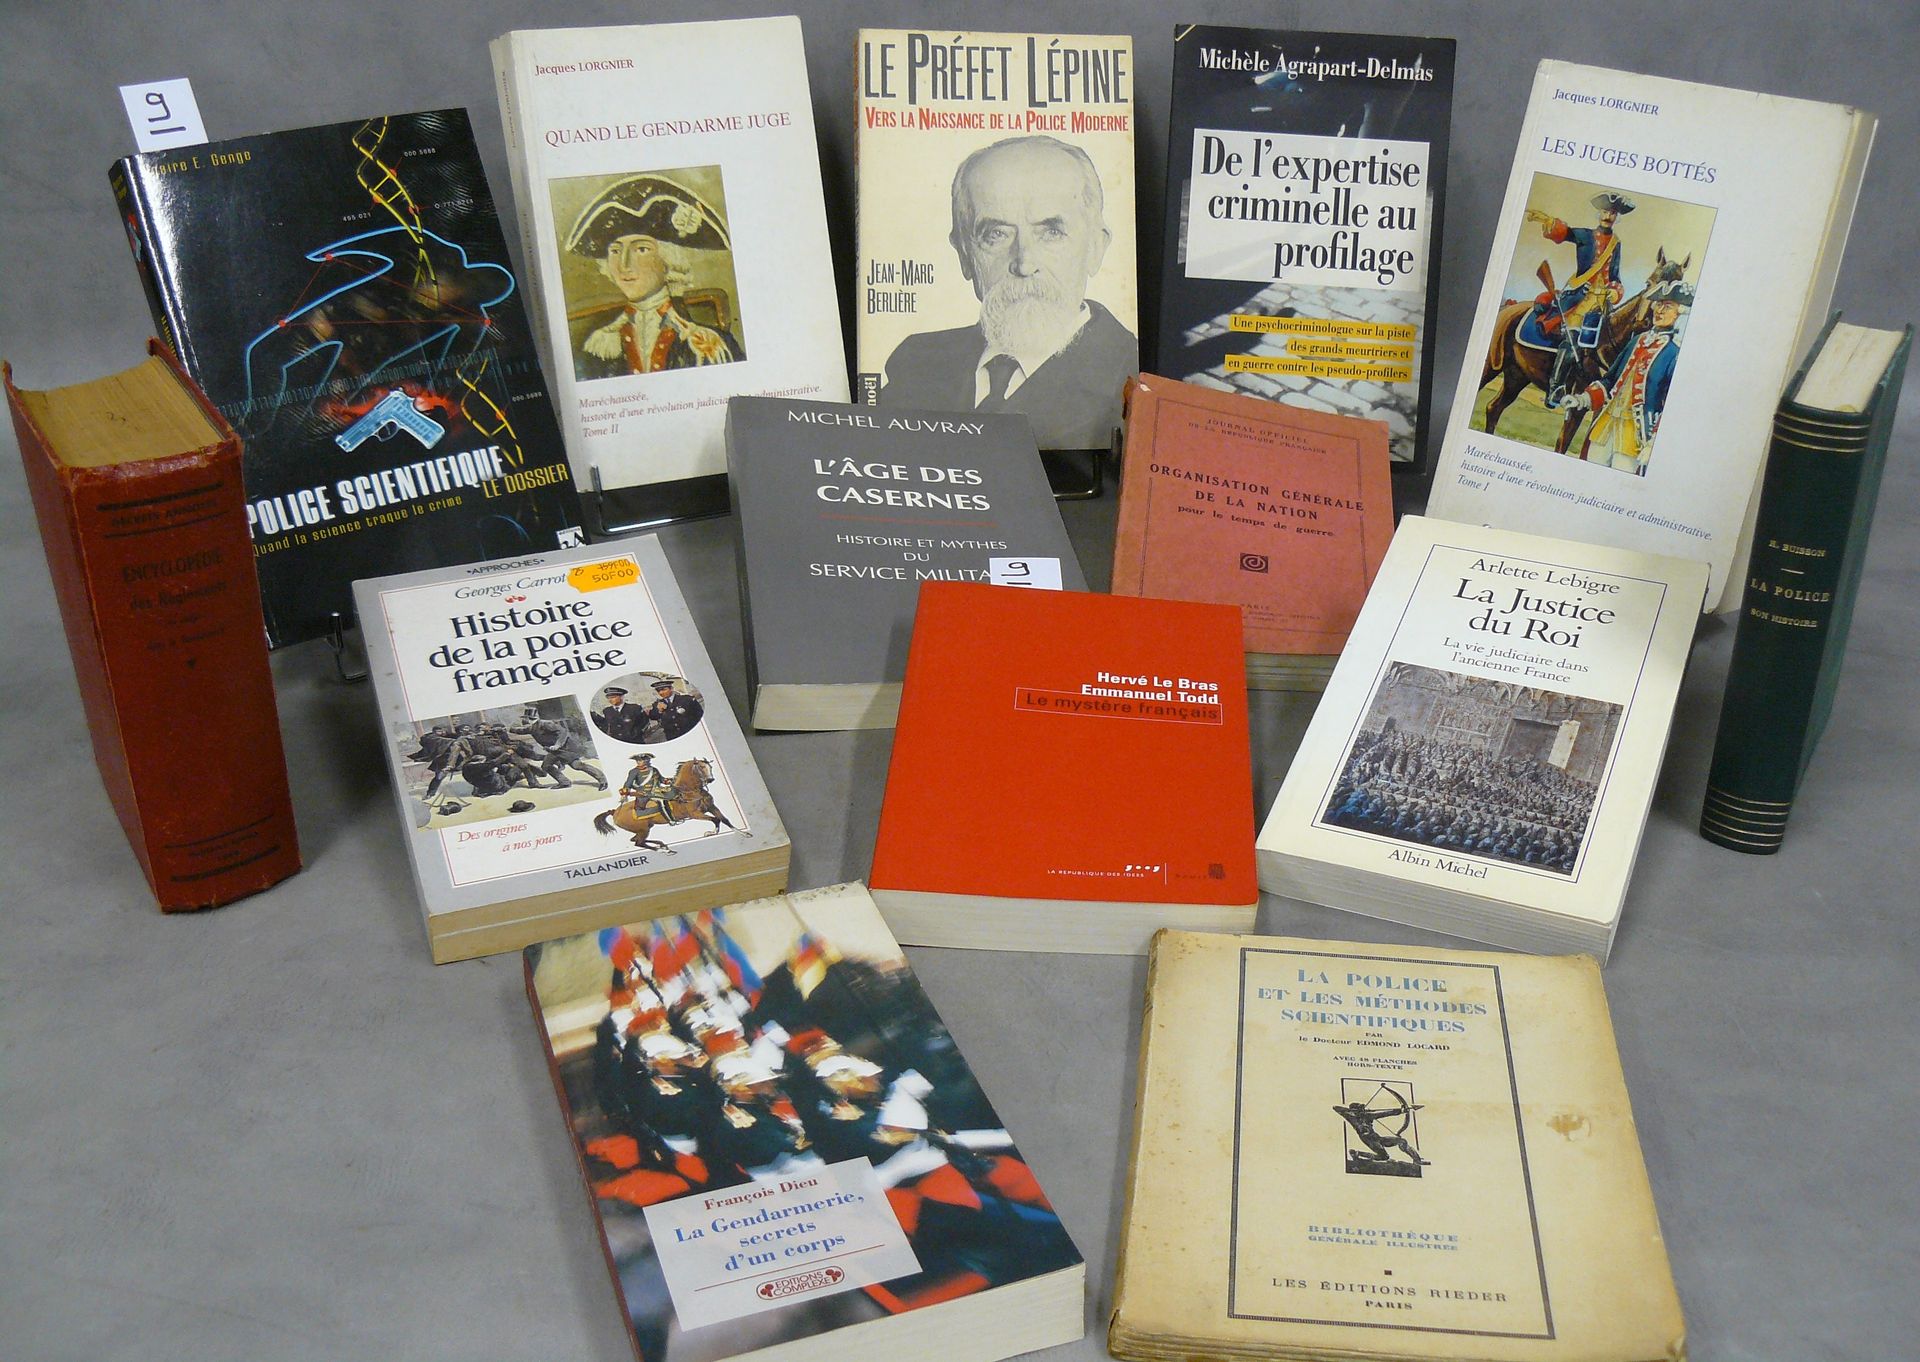 Gendarme, Juges 一套14本关于警察和司法的书籍，包括：Quand le gendarme juge